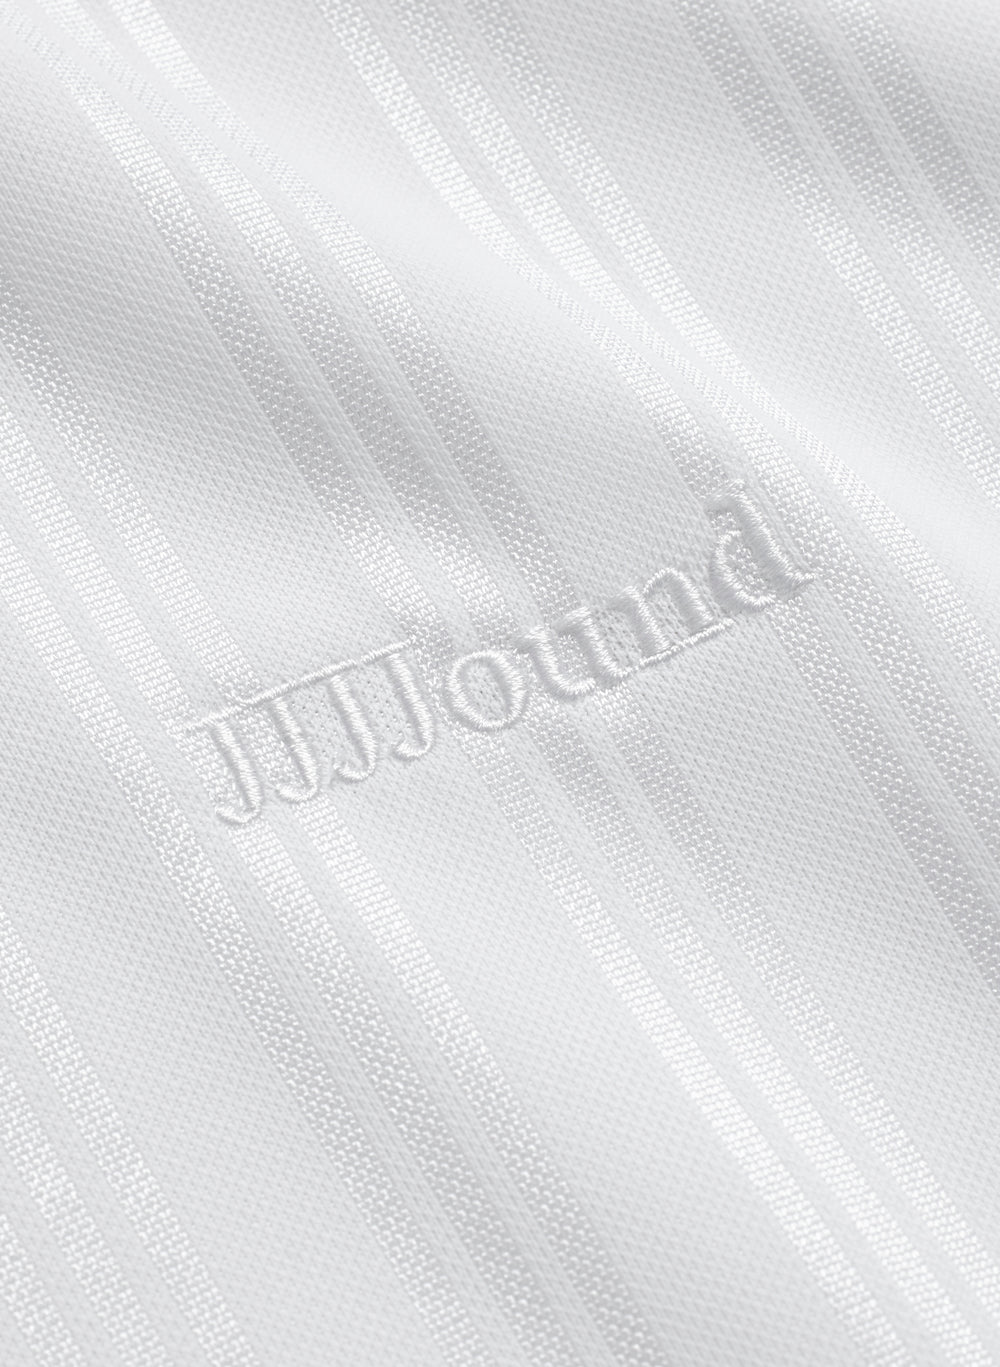 JJJJound Adidas Jersey - White